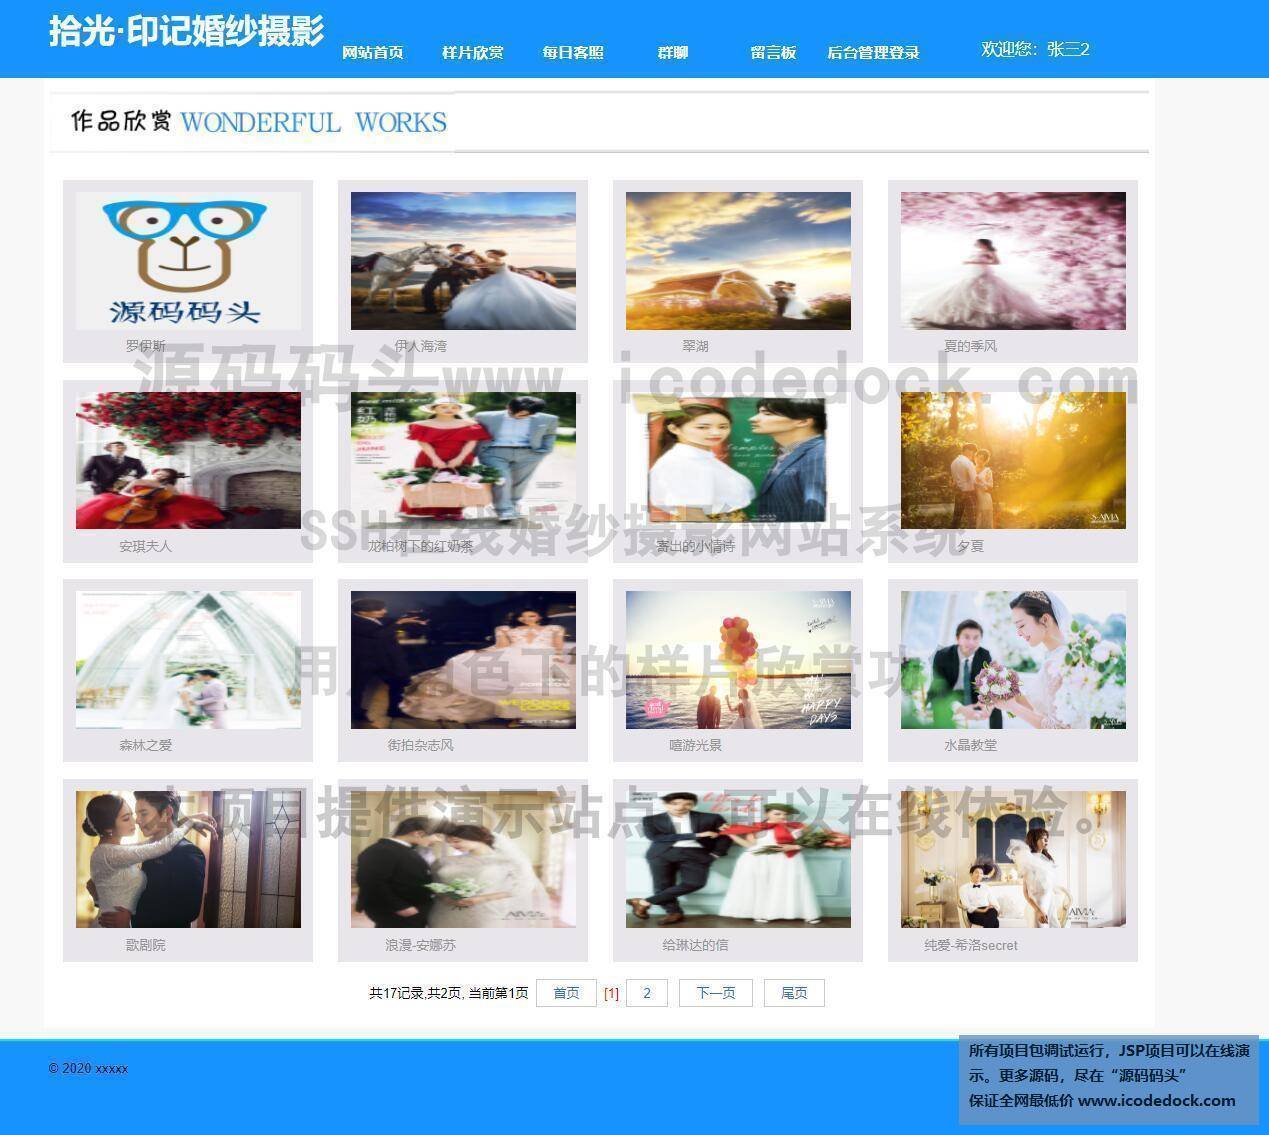 源码码头-SSH在线婚纱摄影网站系统-用户角色-样片欣赏